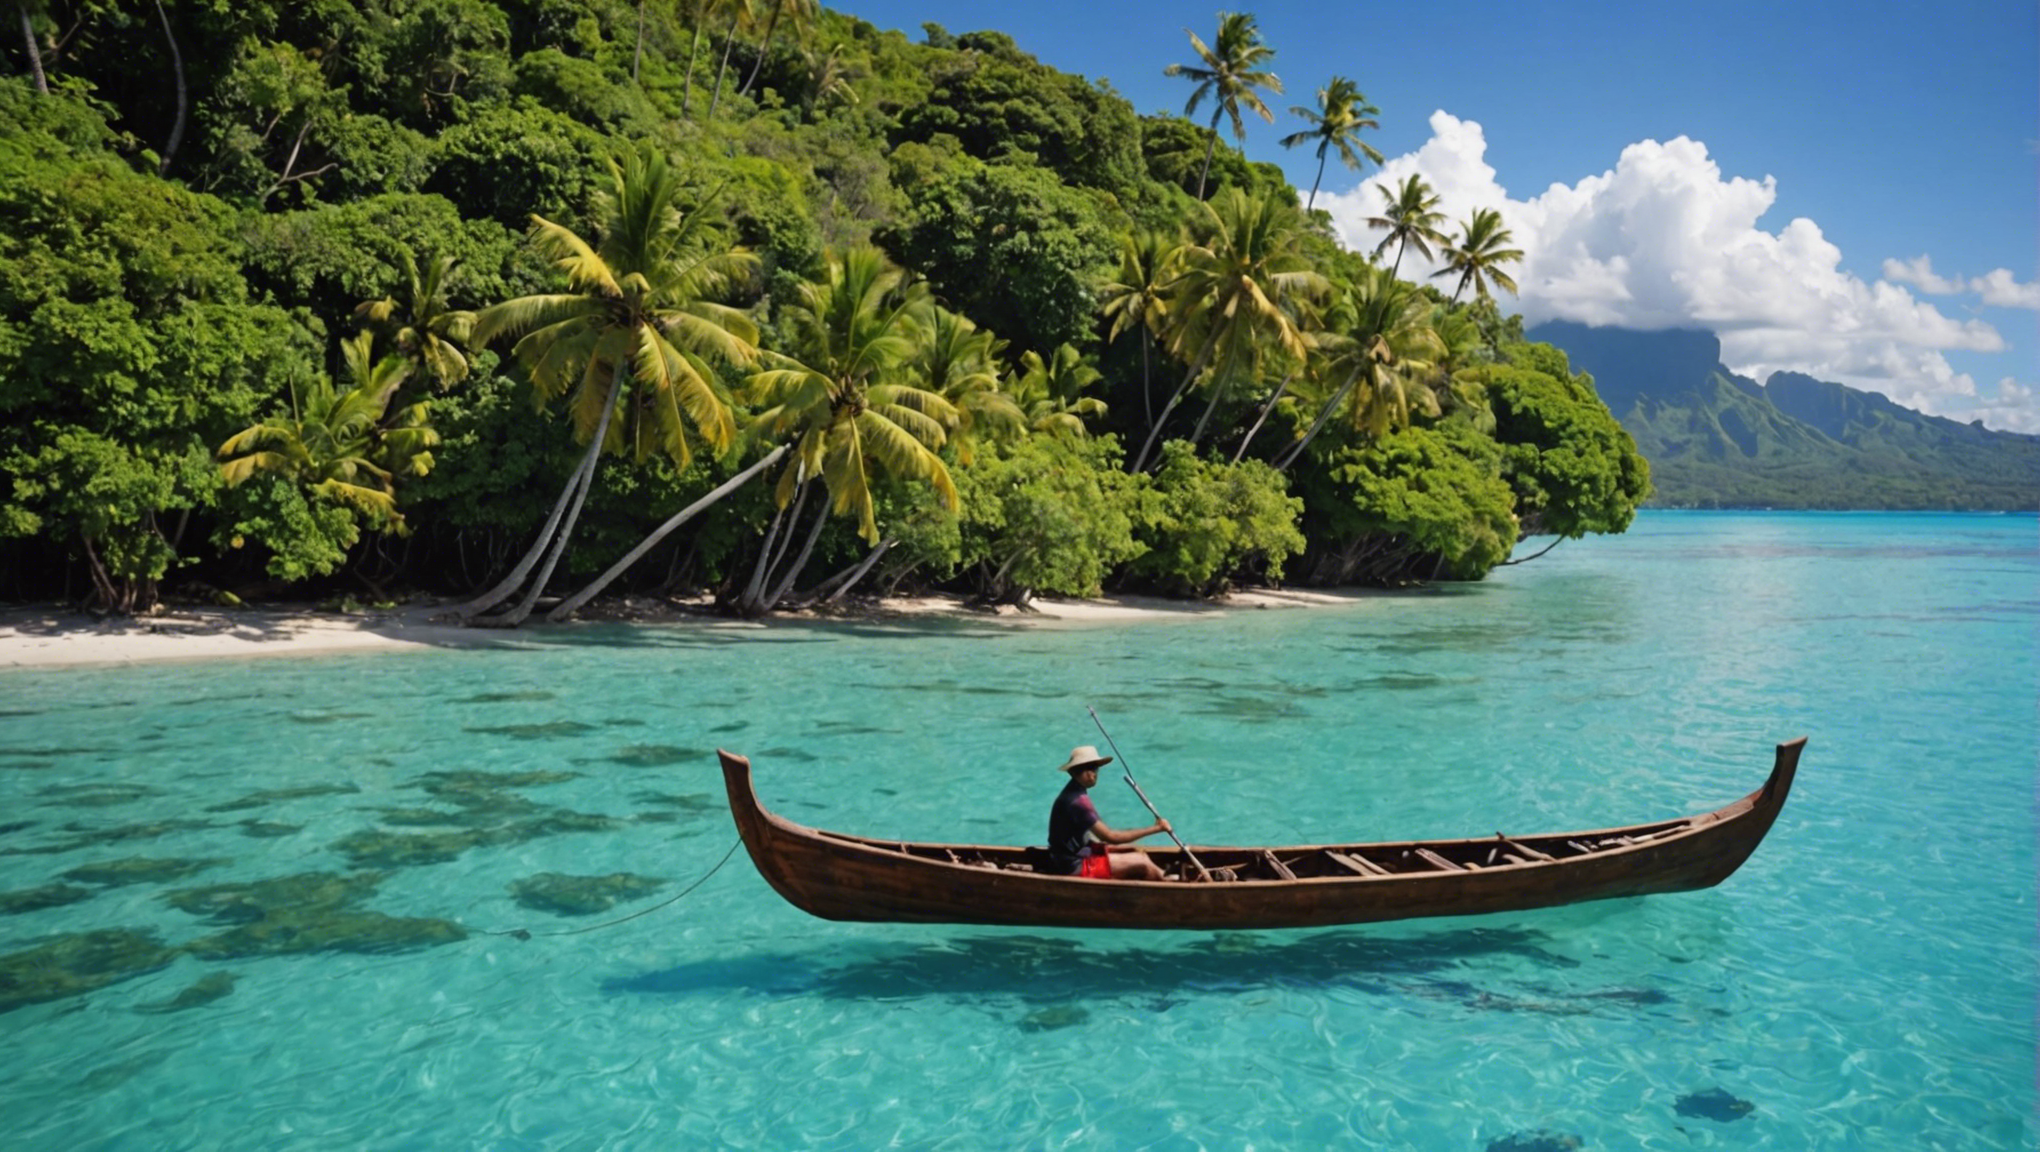 découvrez tahiti à travers une balade en pirogue dans son lagon, une expérience inoubliable pour explorer la beauté de l'île et de ses eaux cristallines.